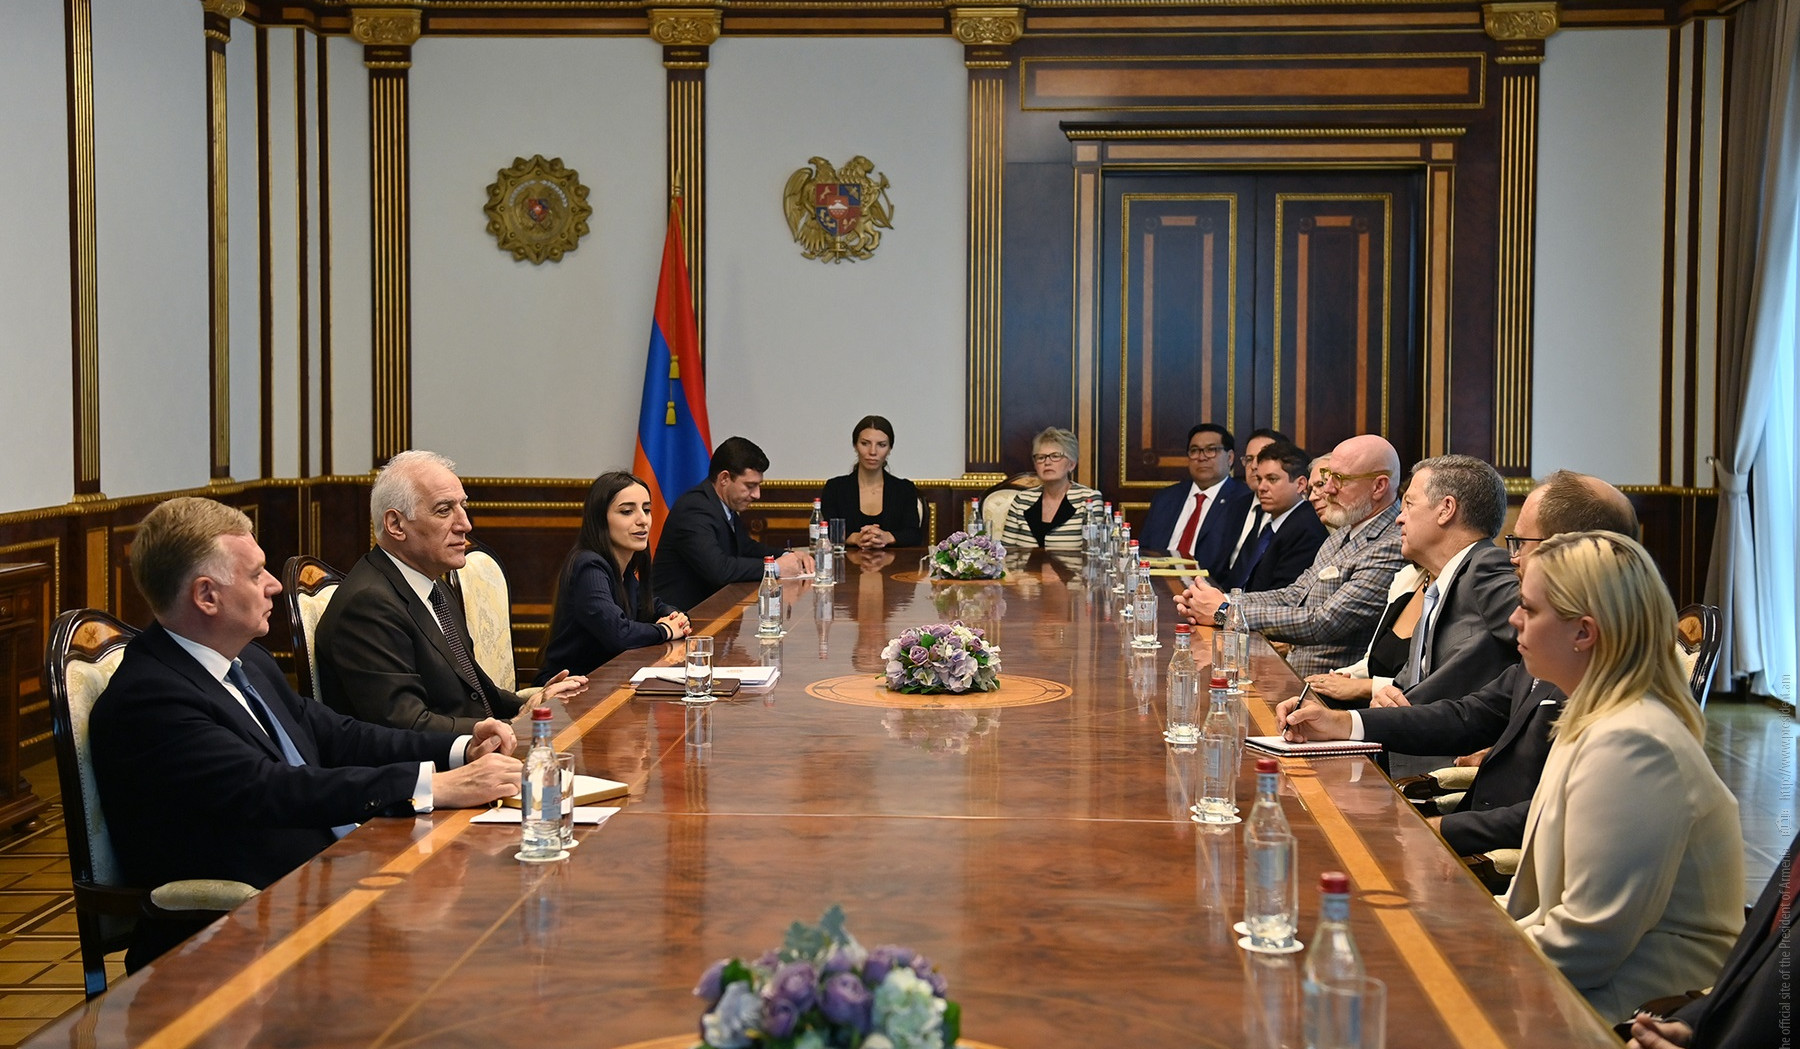 Philos Project-ի ղեկավարը ՀՀ նախագահի հետ հանդիպմանը շեշտել է հայ-ամերիկյան բազմաշերտ կապերի սերտացմանը նպաստելու պատրաստակամությունը